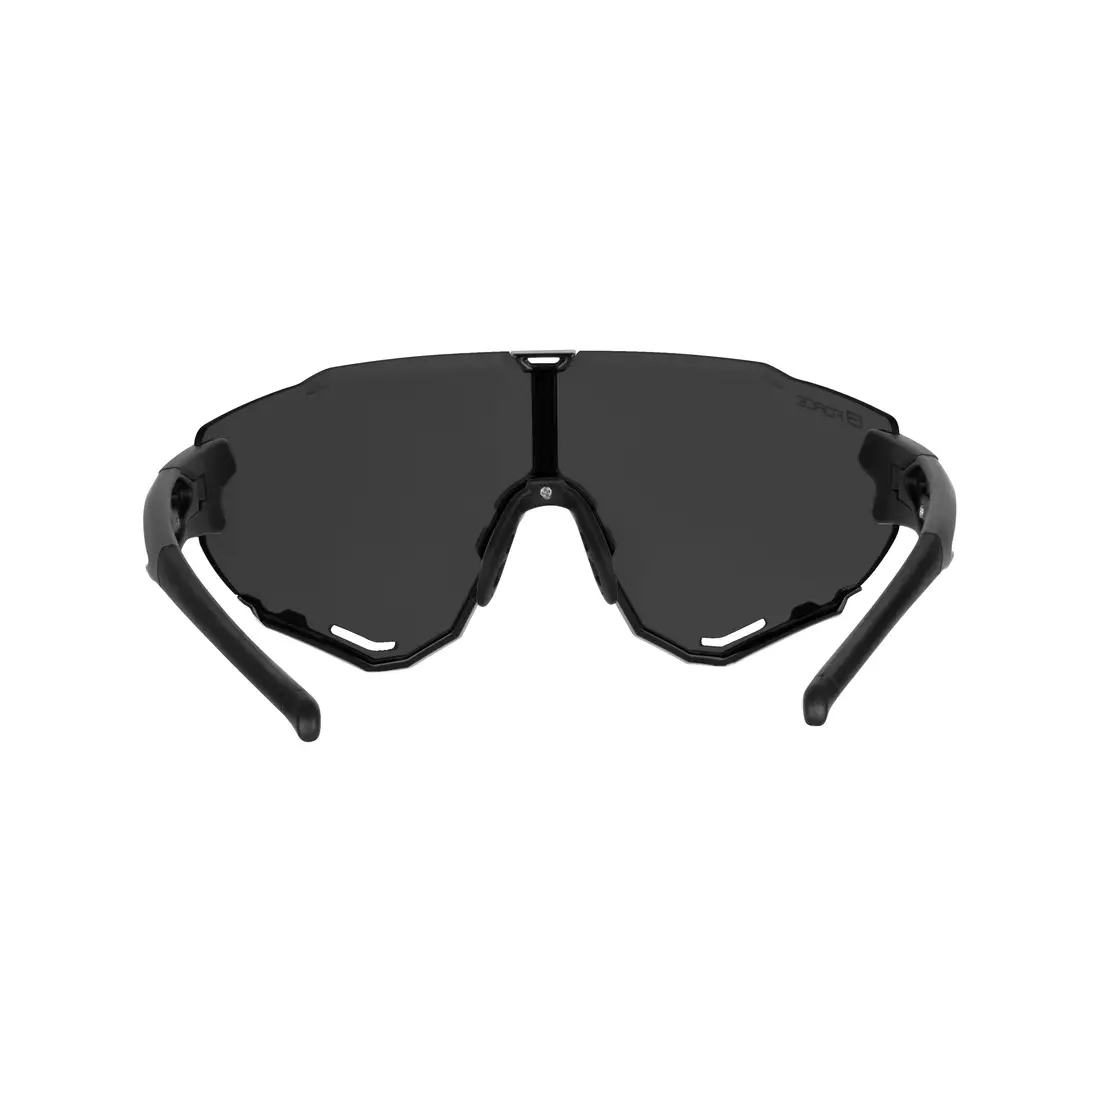 FORCE kerékpáros / sport szemüveg CREED fekete, 91181